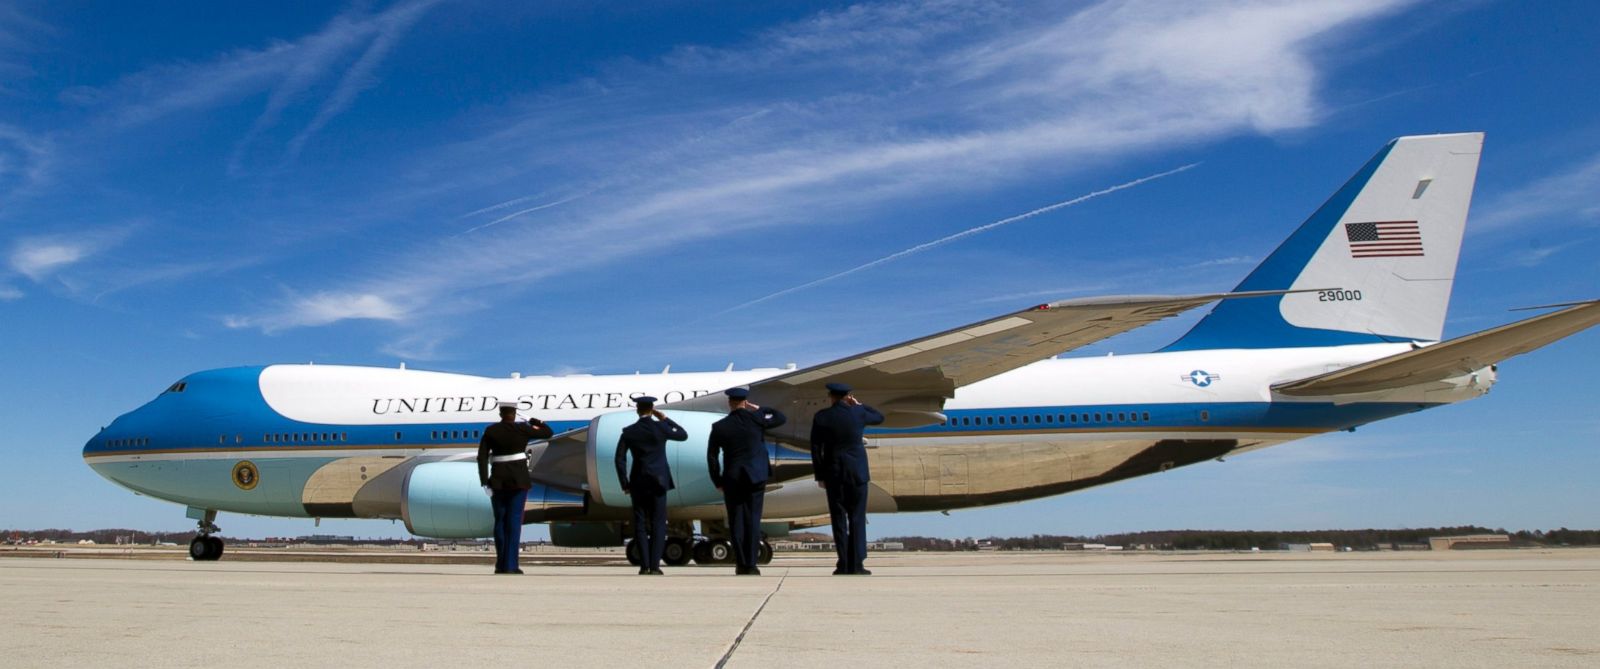 Chiếc máy bay Air Force One (Không lực 1) chở Tổng thống Obama sẽ đáp xuống sân bay Nội Bài rạng sáng 23.5